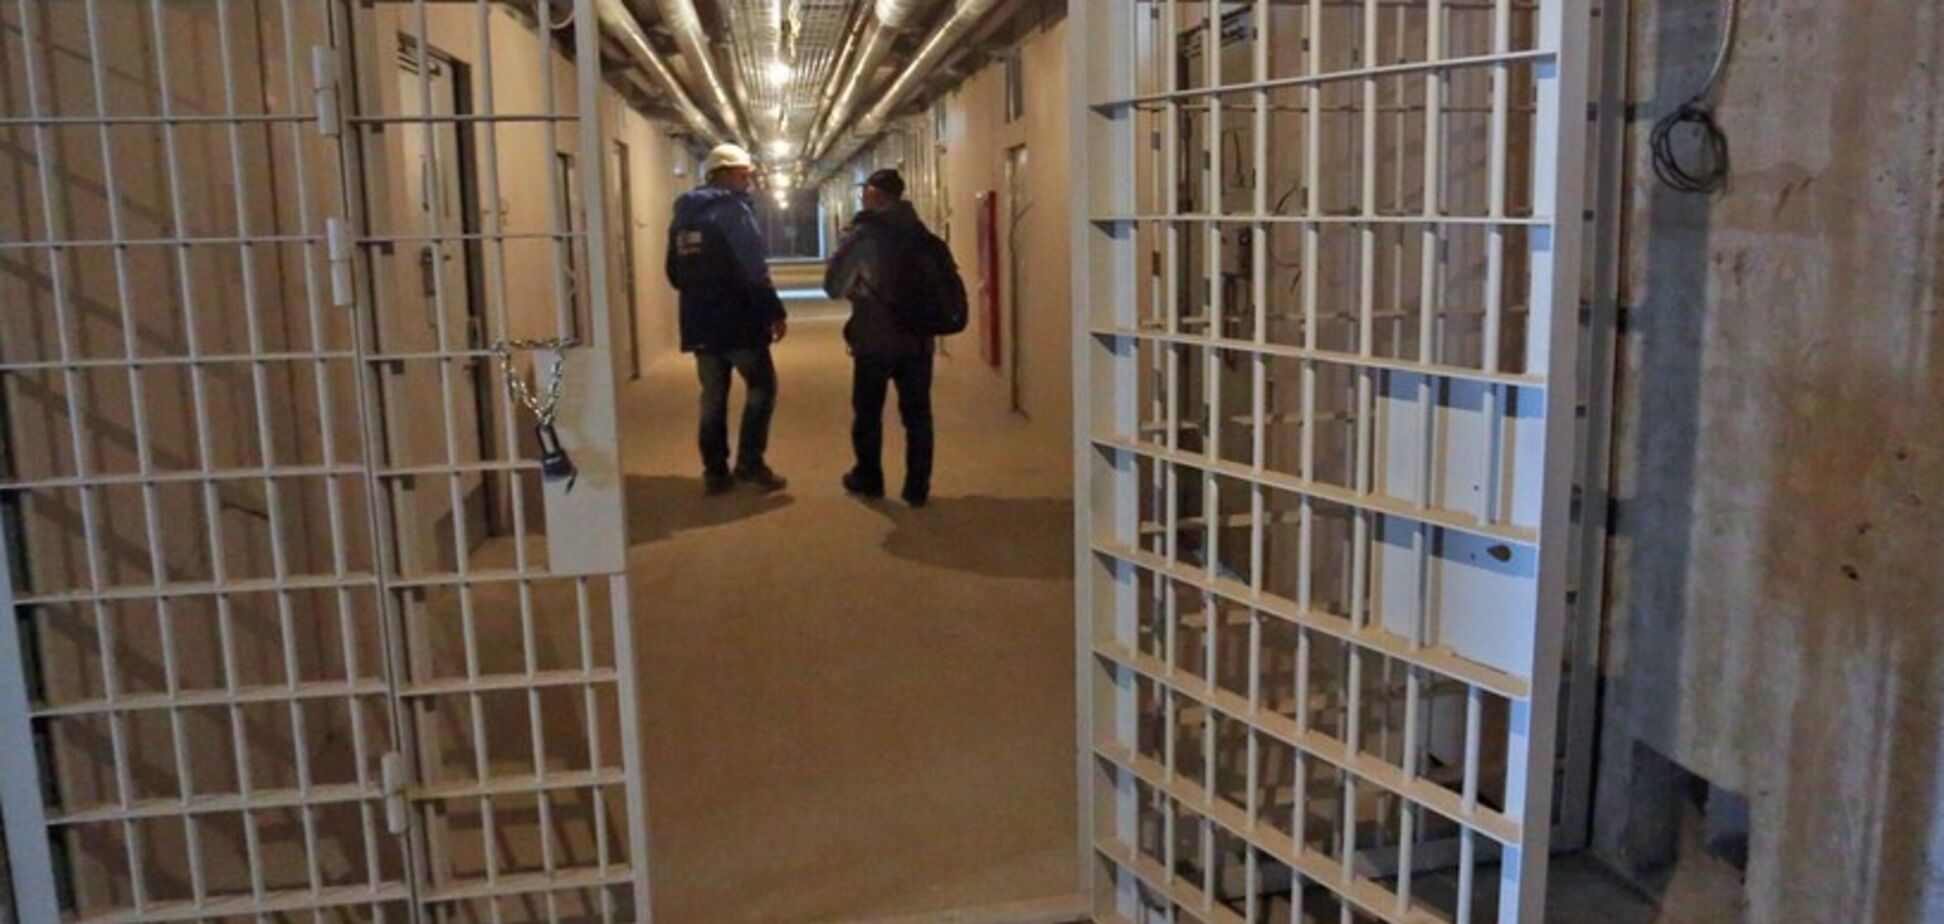 Камера пыток: появилось новое видео зверских пыток в российской тюрьме. 18+